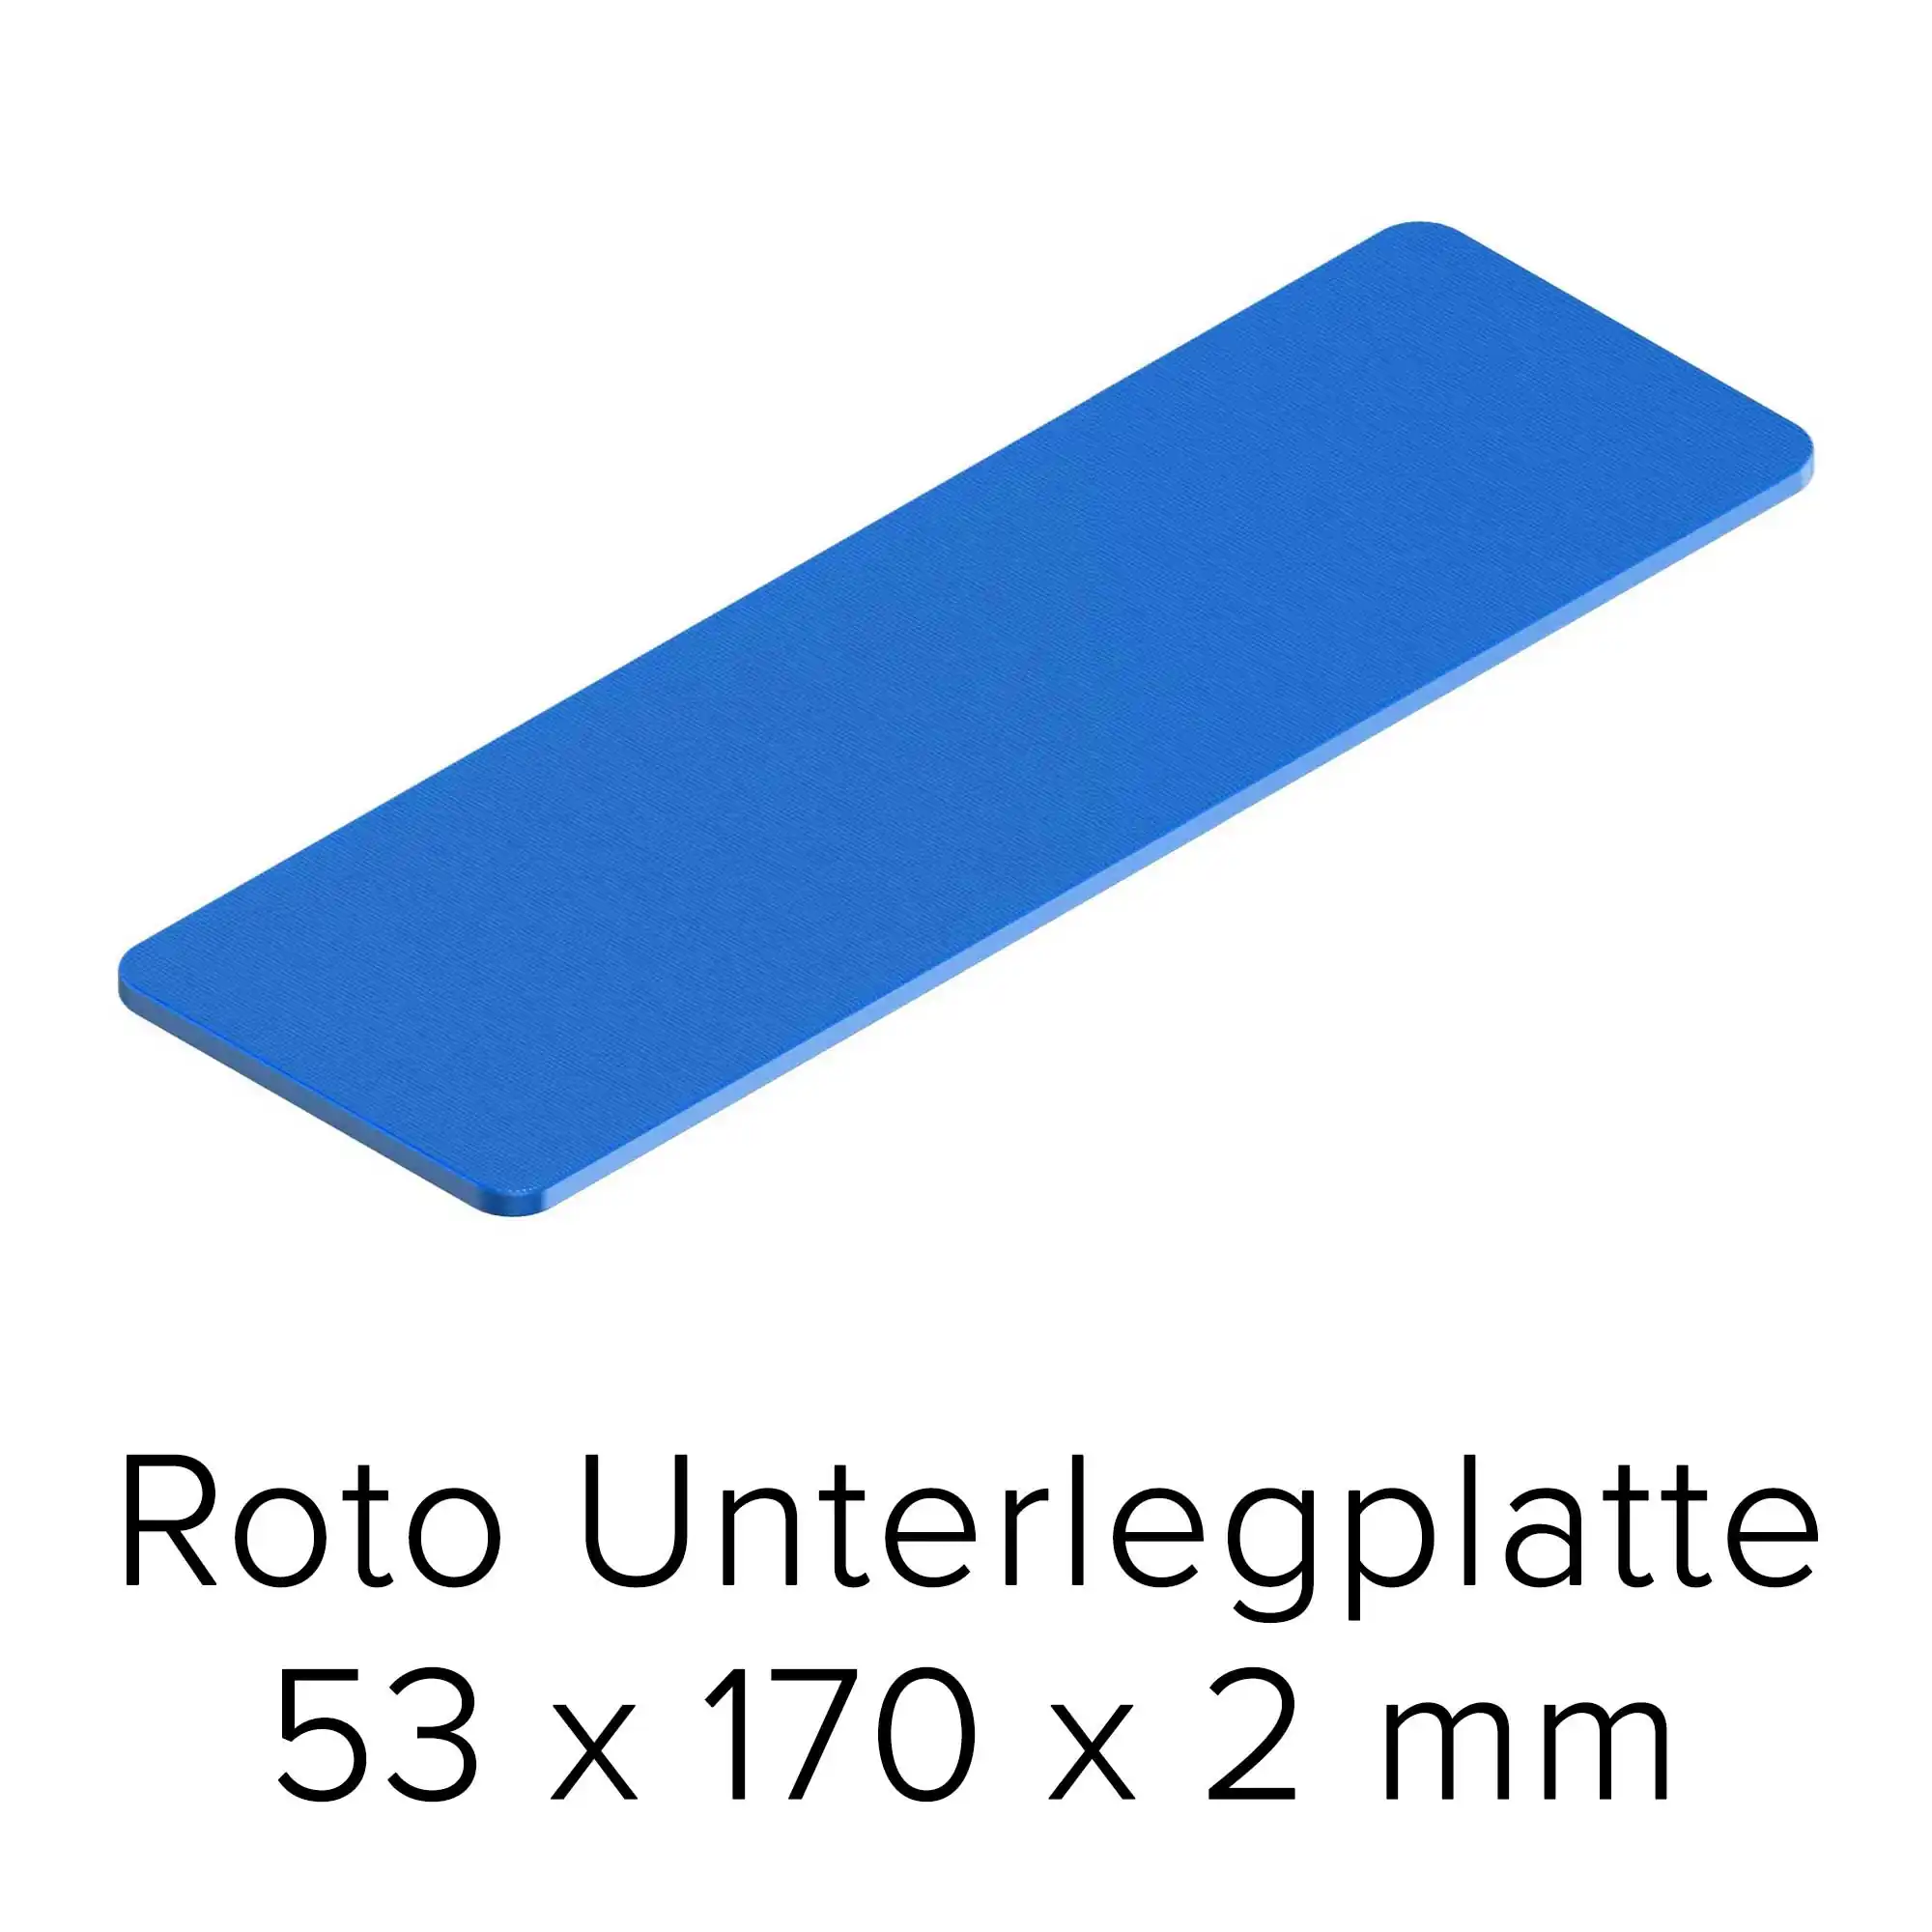 Roto Unterlegplatte 53 x 170 x 2 mm